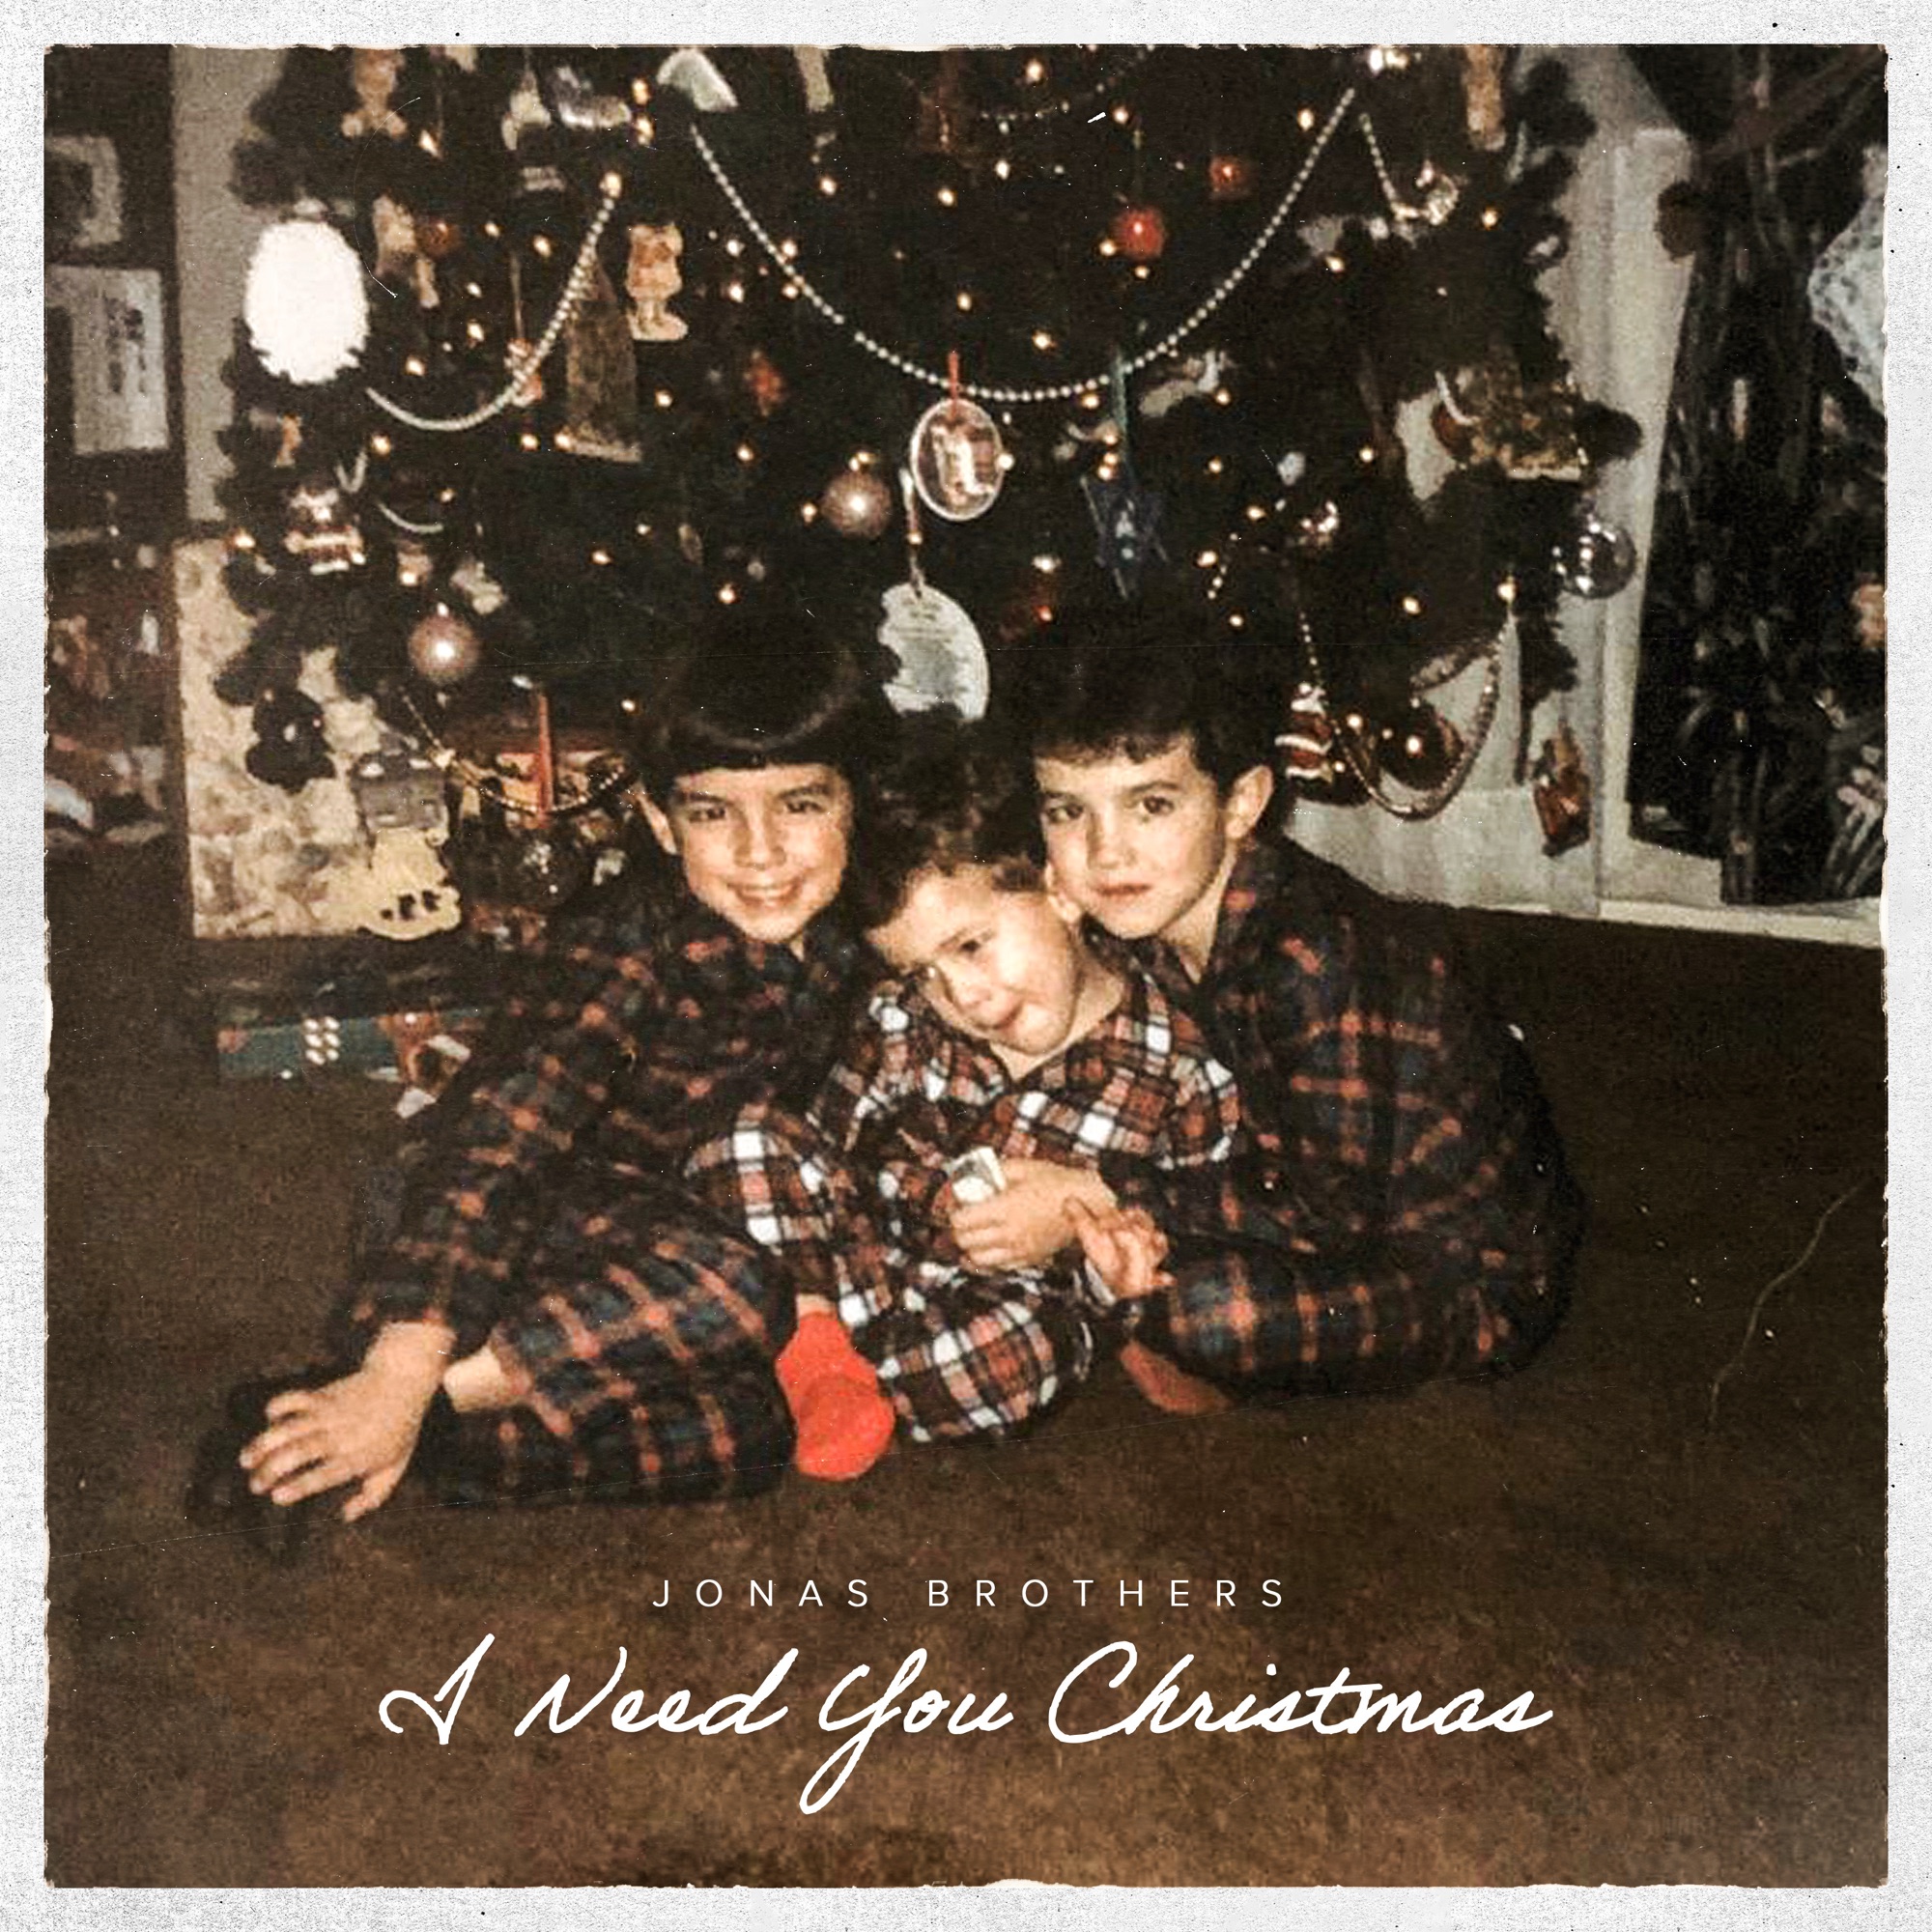 Jonas Brothers - I Need You Christmas - Single